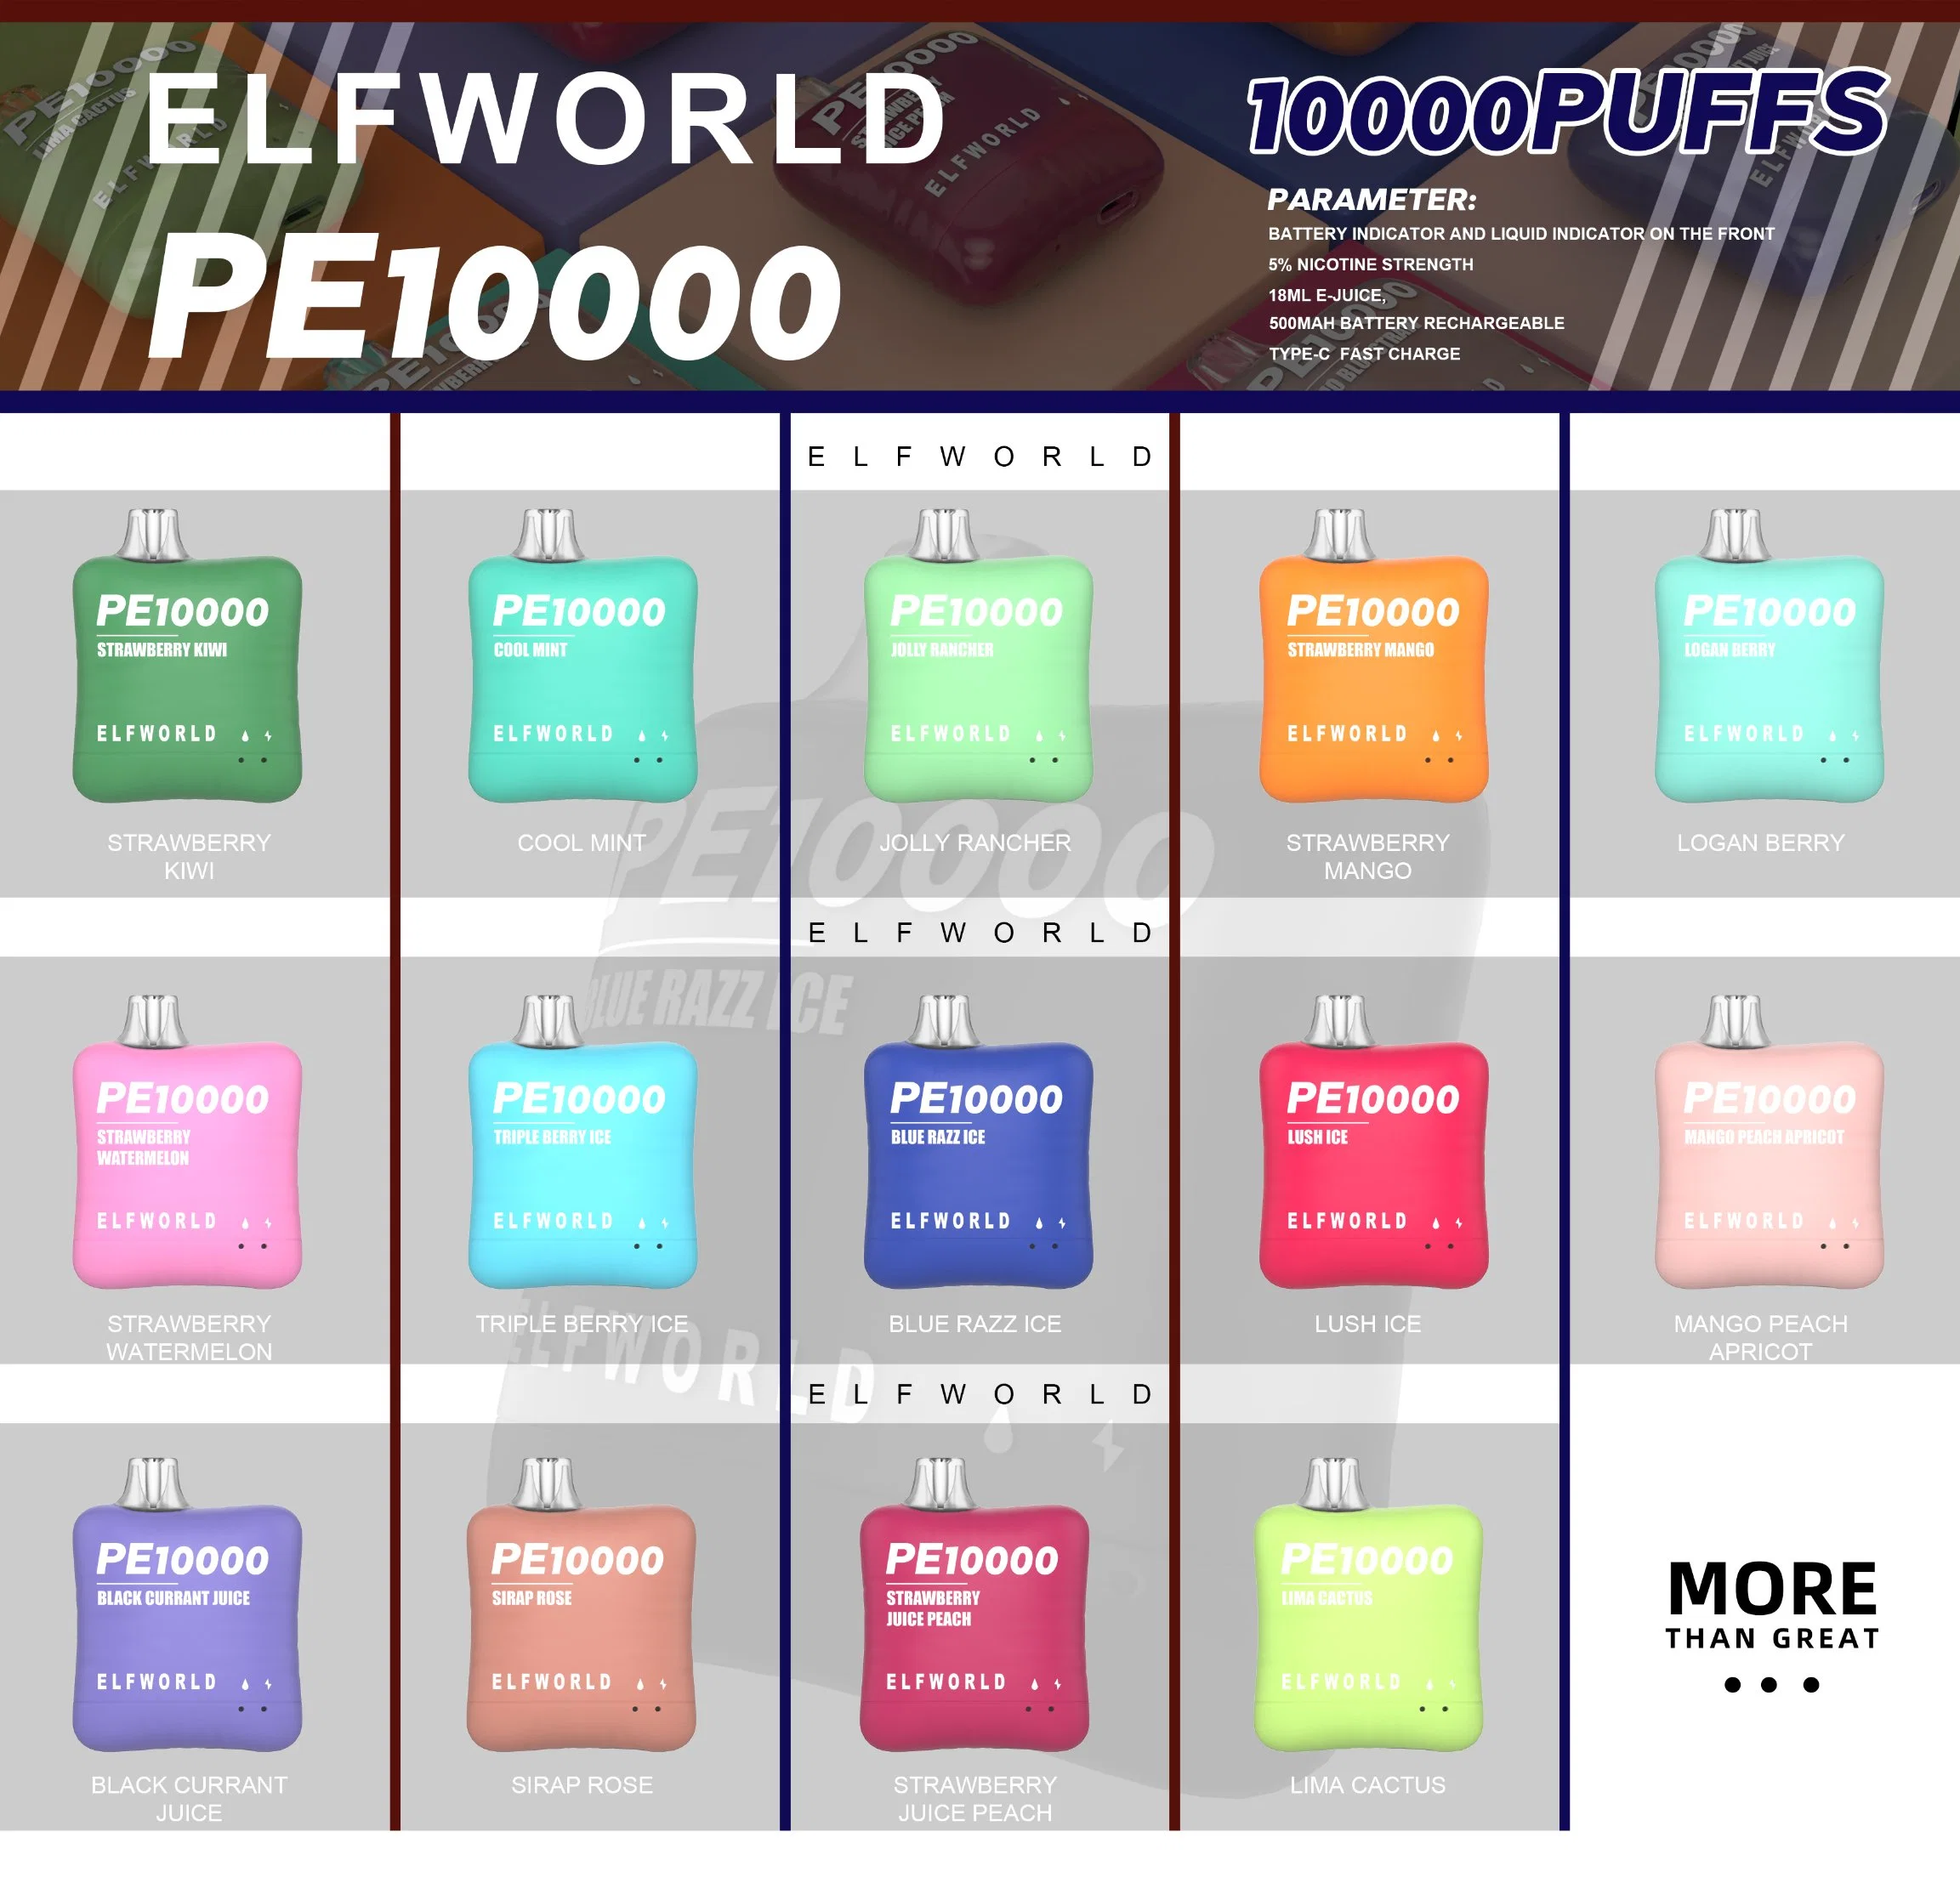 أفضل فيلم لفيلم Vape Elfworld Pi9000 PE10000 بالجملة يمكن التخلص منه قلم القرود 0%2%5% نيكوتين E قلم سجائر بالجملة أنا قرد 10 K وPuff Vape